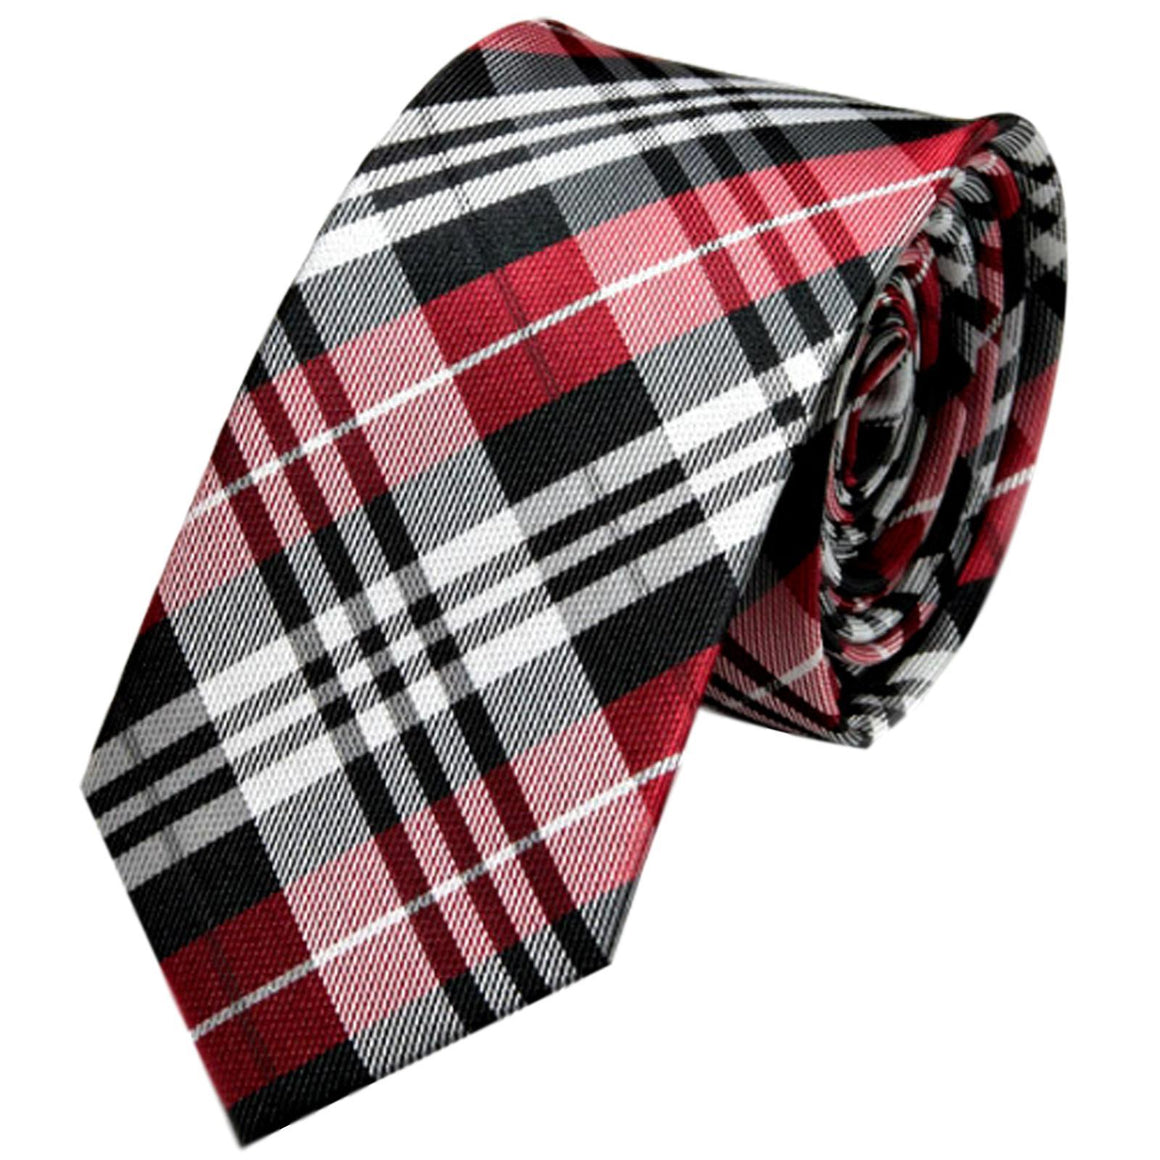 GASSANI 6cm Schmale Rot-Schwarz Karierte Herren-Krawatte, Karo Check-Muster Vintage Schlips Binder